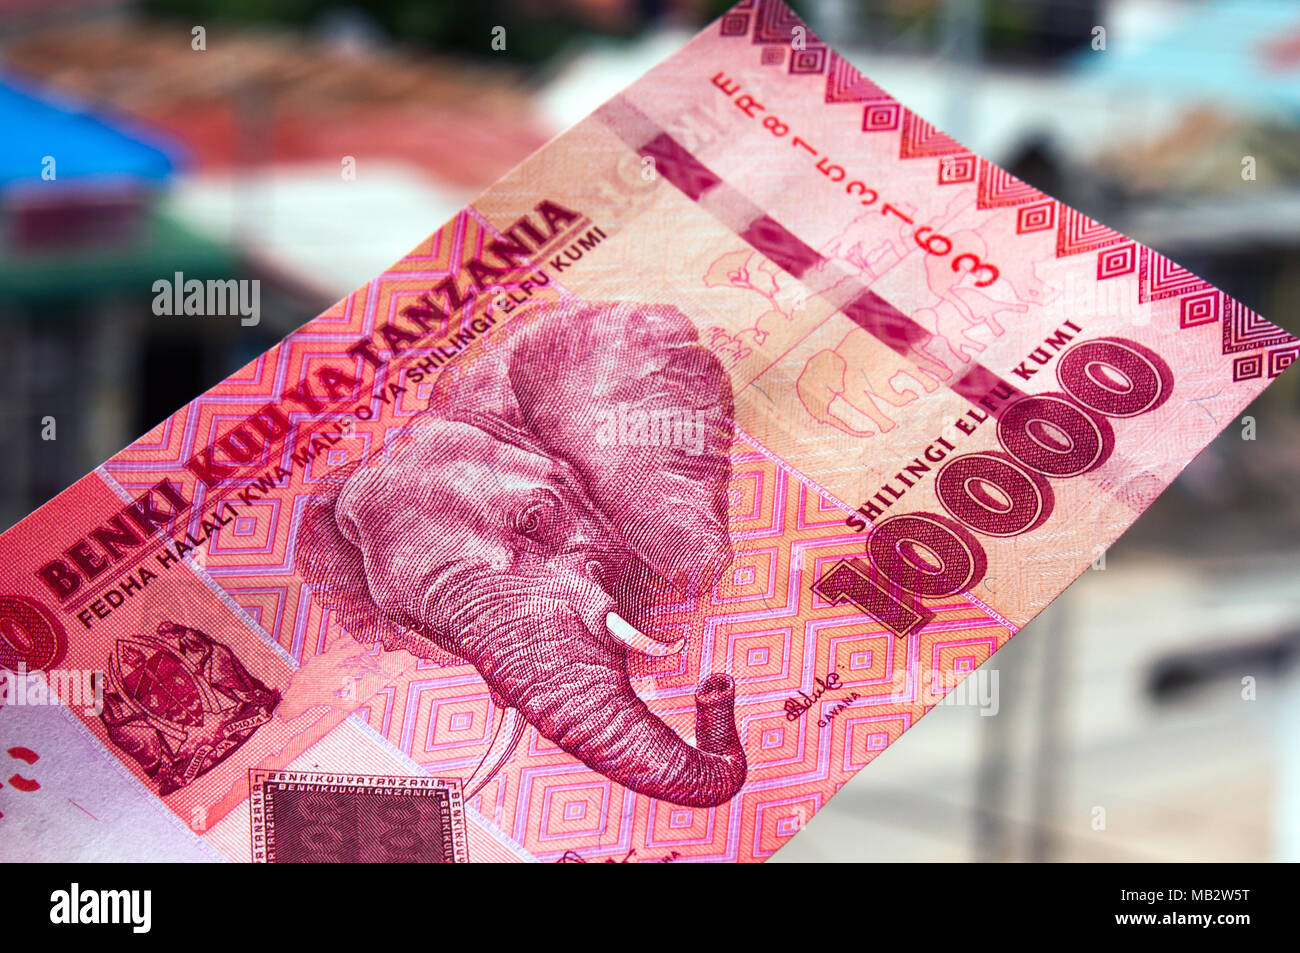 Le shilling tanzanien 10 000 euros représentant éléphant dans le wild photographié sur place, à Dar es Salaam Banque D'Images